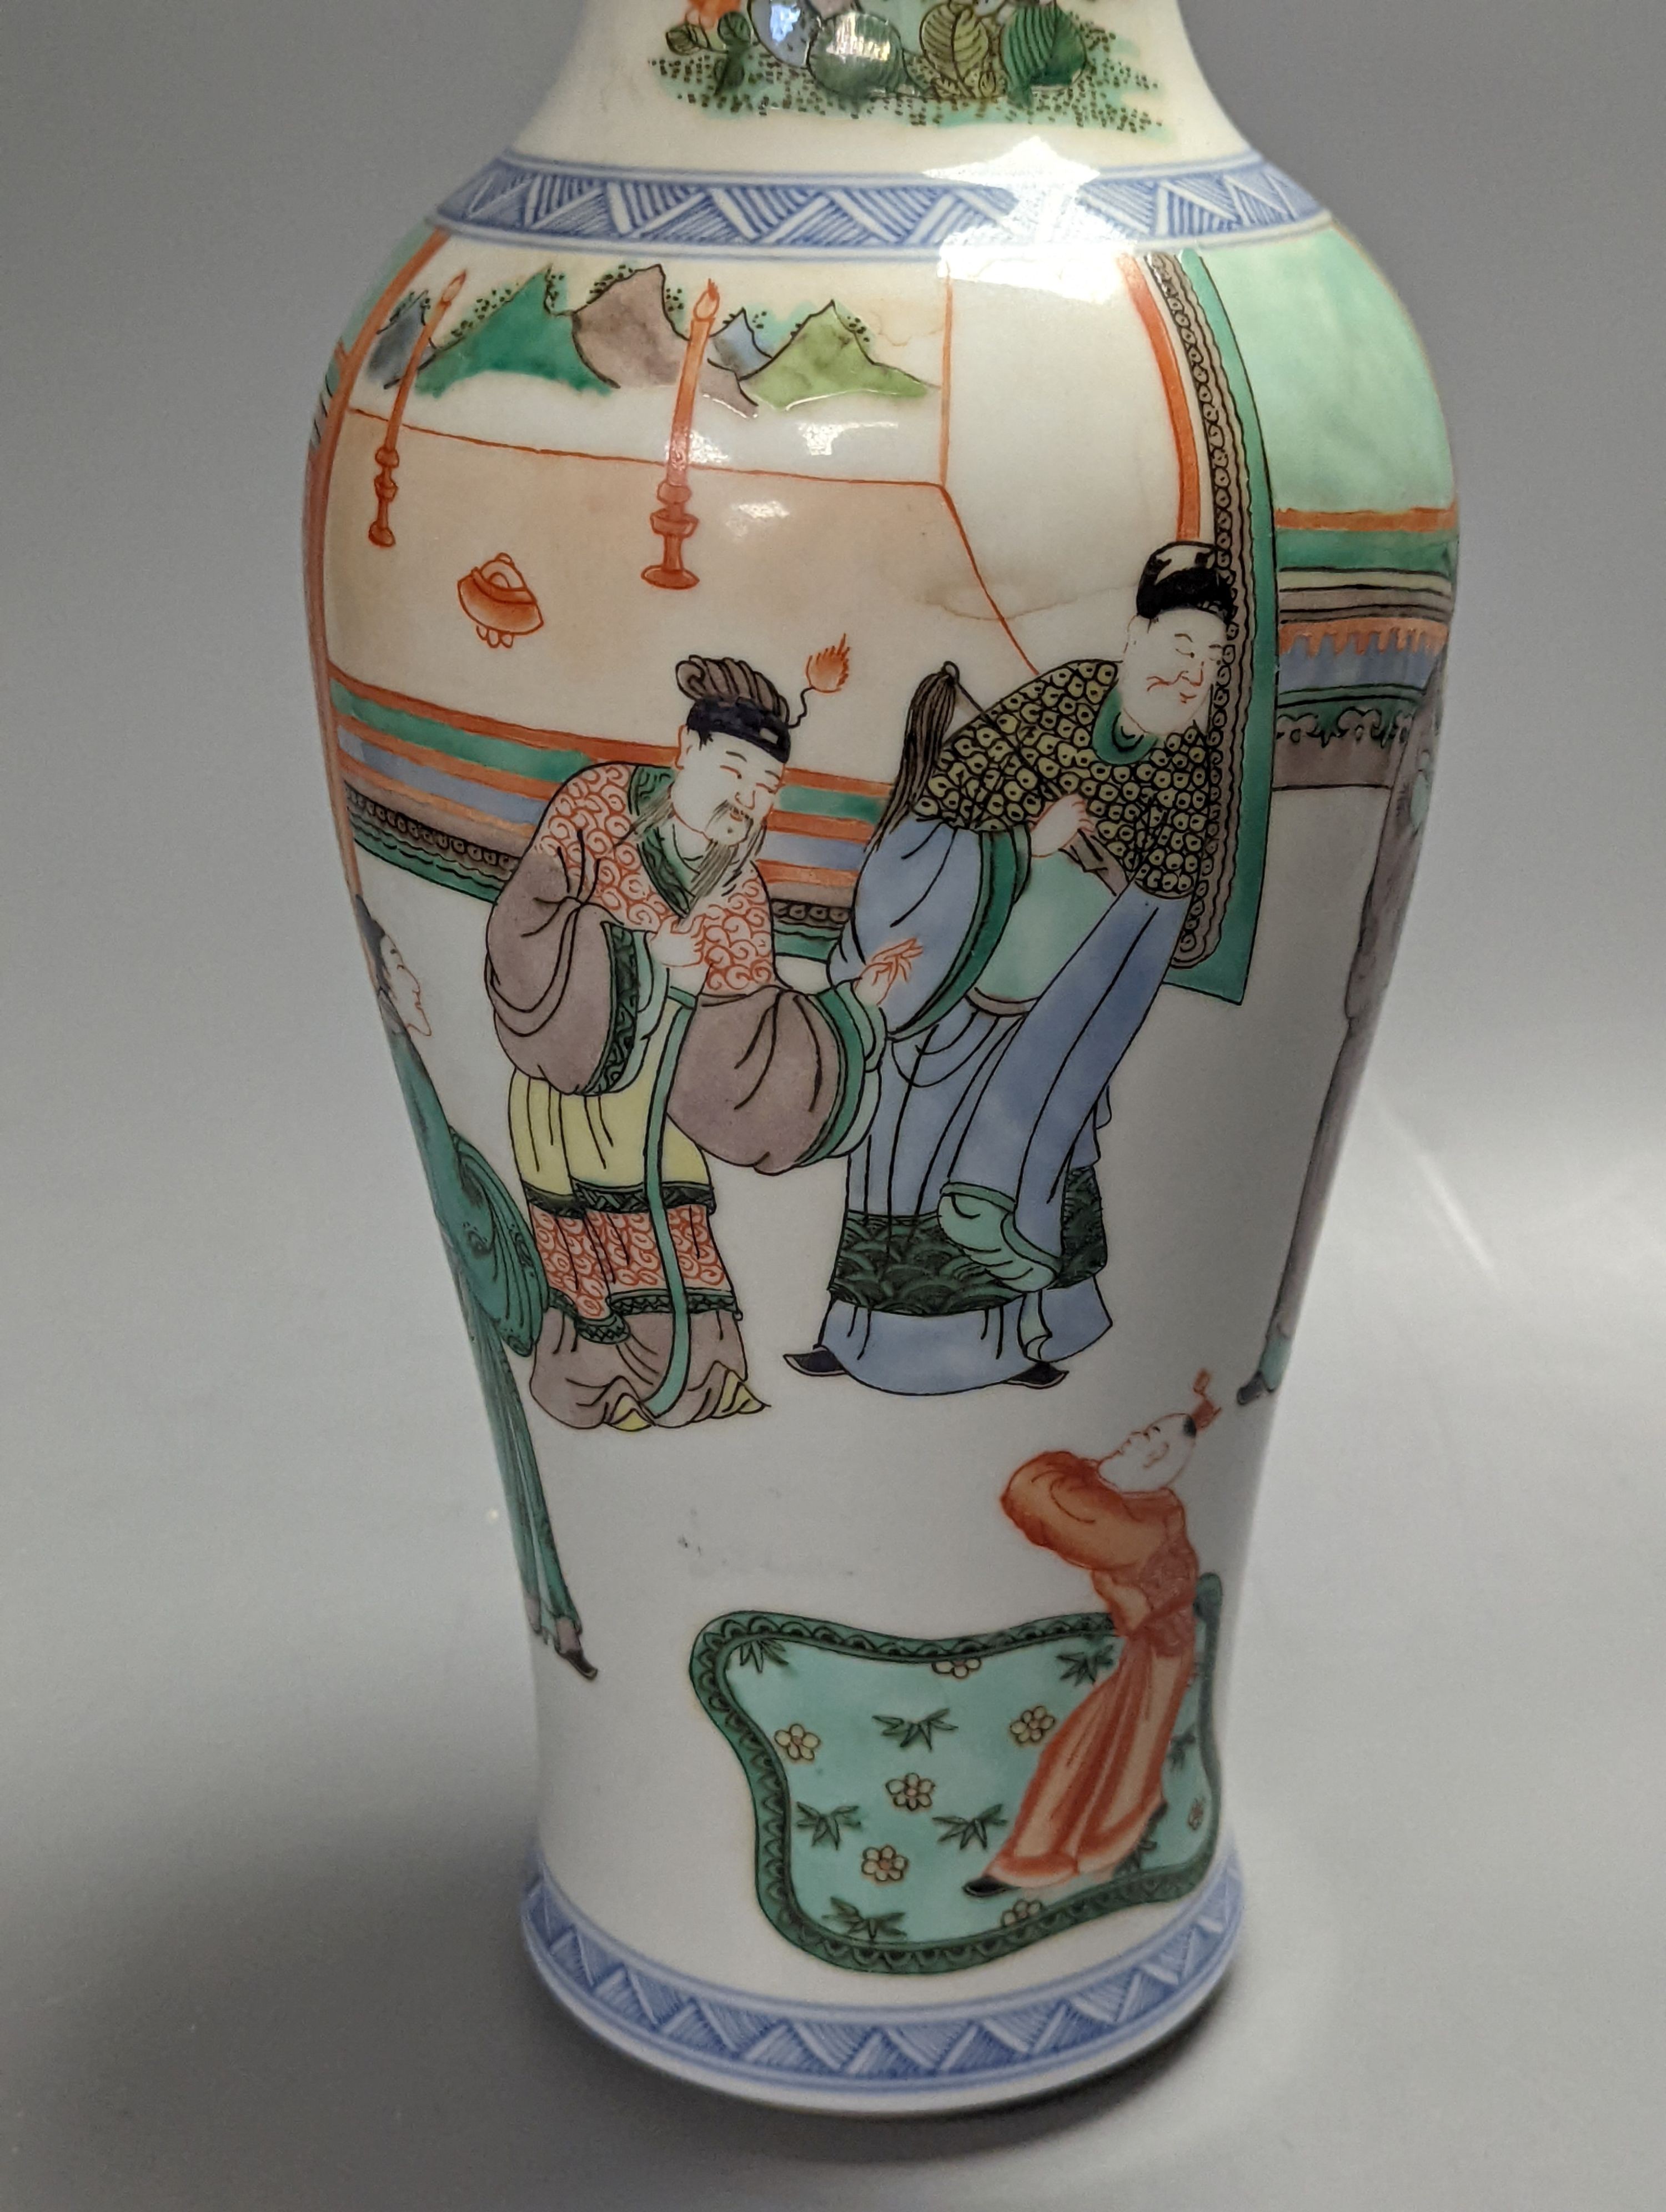 A Chinese famille verte vase, 30cm